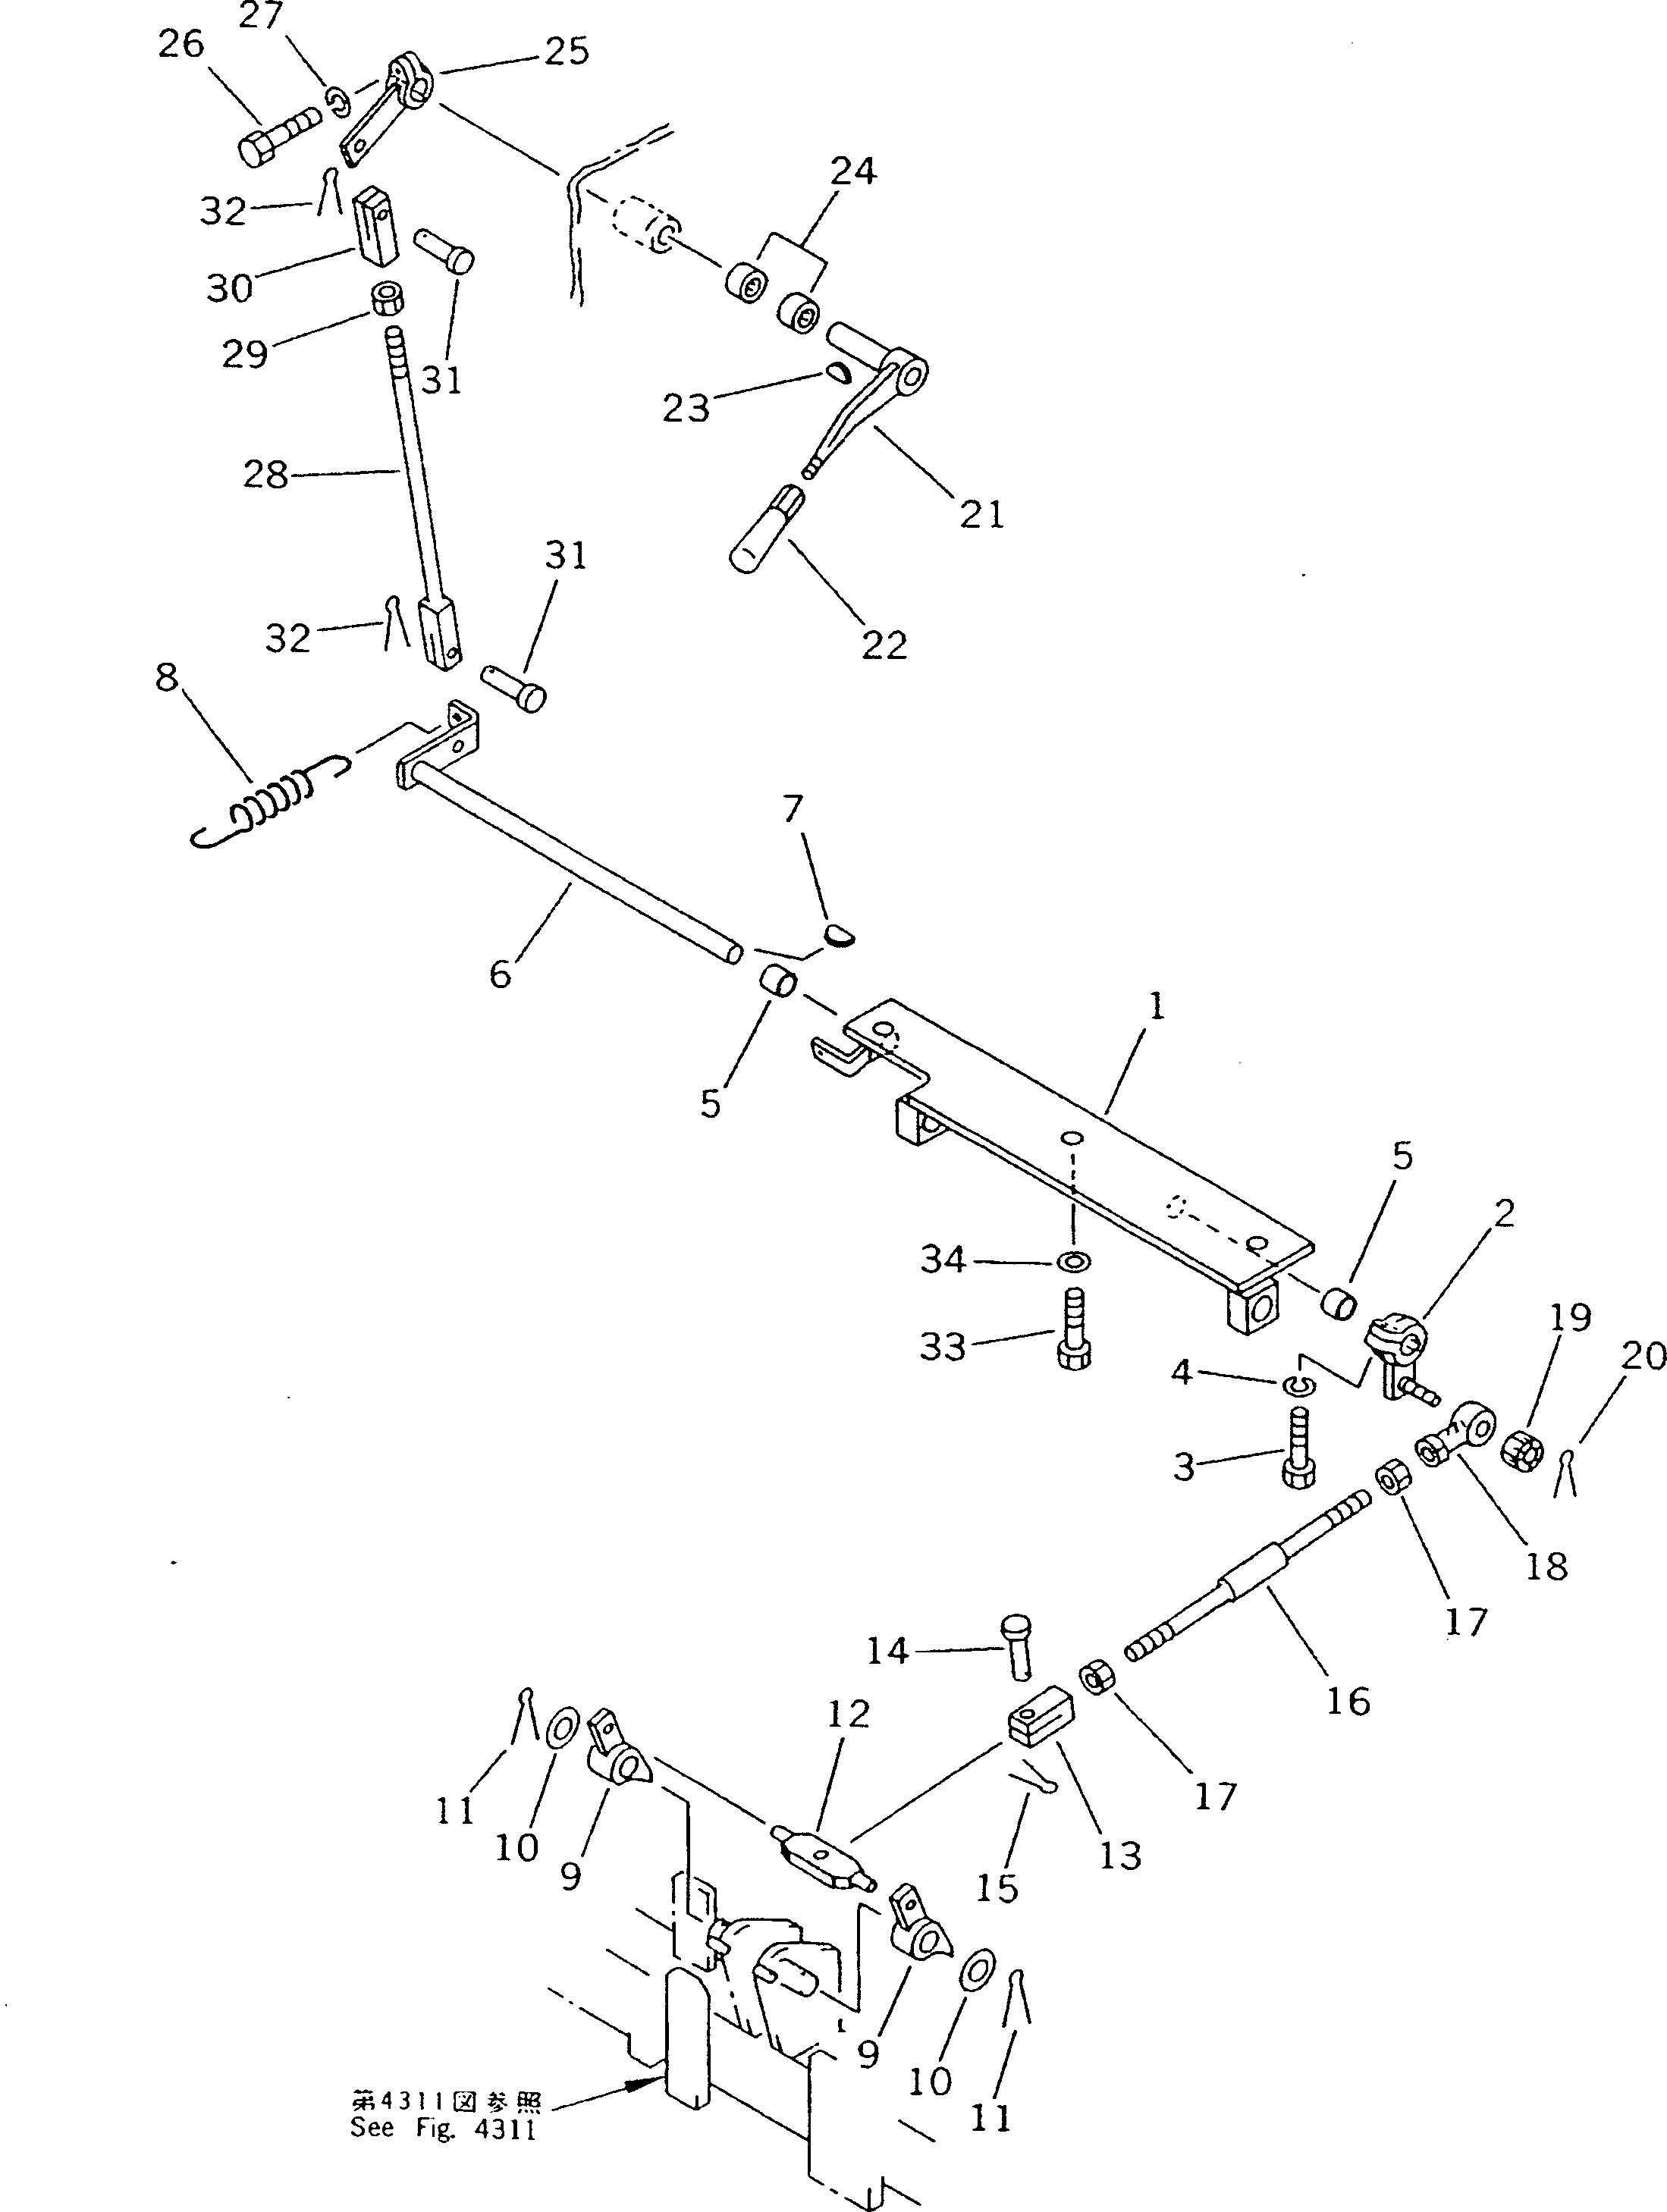 120. PARKING BRAKE LEVER [4331] - Komatsu part D135A-2 S/N 10301-UP [d135a-2c]